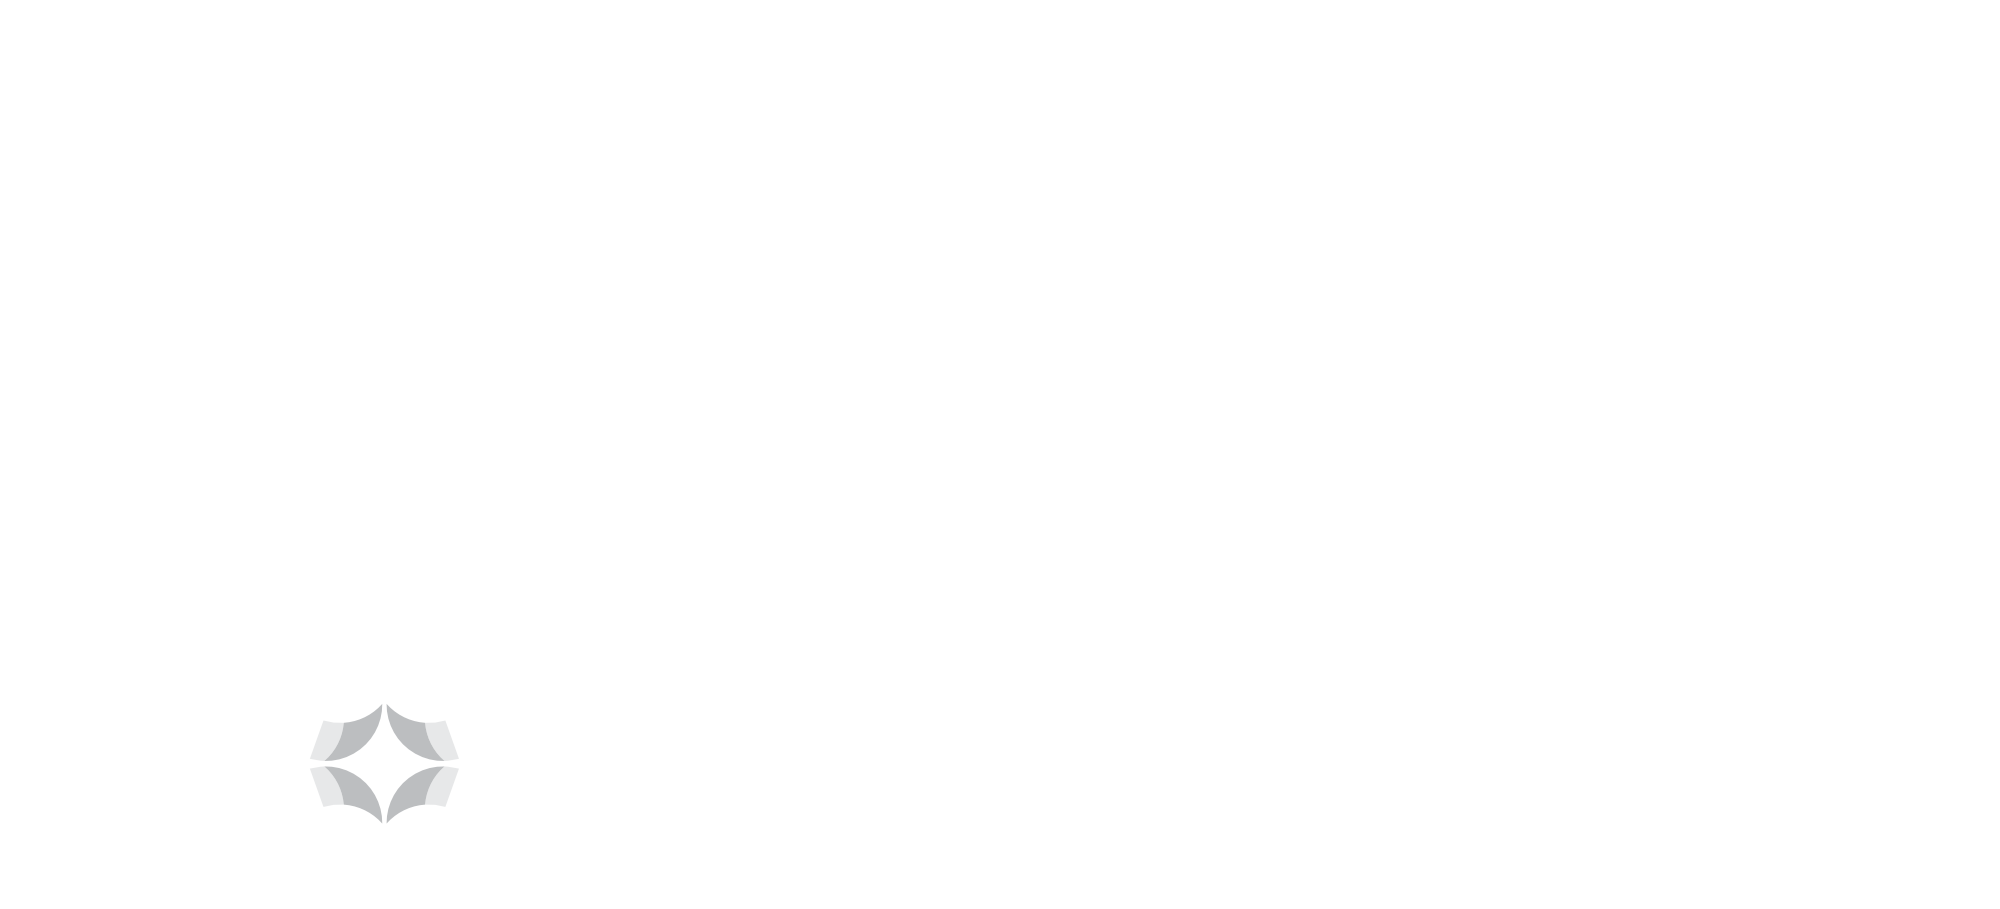 Les activités d'Innov & Export PME sont rendues possibles grâce à Développement Économique Canada (DEC), Le ministère de l'Économie et de l'innovation (MEI). Innov & Export PME a aussi une étroite collaboration avec l'Université du Québec à Rimouski (UQAR). Nous sommes membres de Commerce International Québec (CIQ) et de l'Association pour le développement de la recherche et de l'innovation du Québec (ADRIQ)